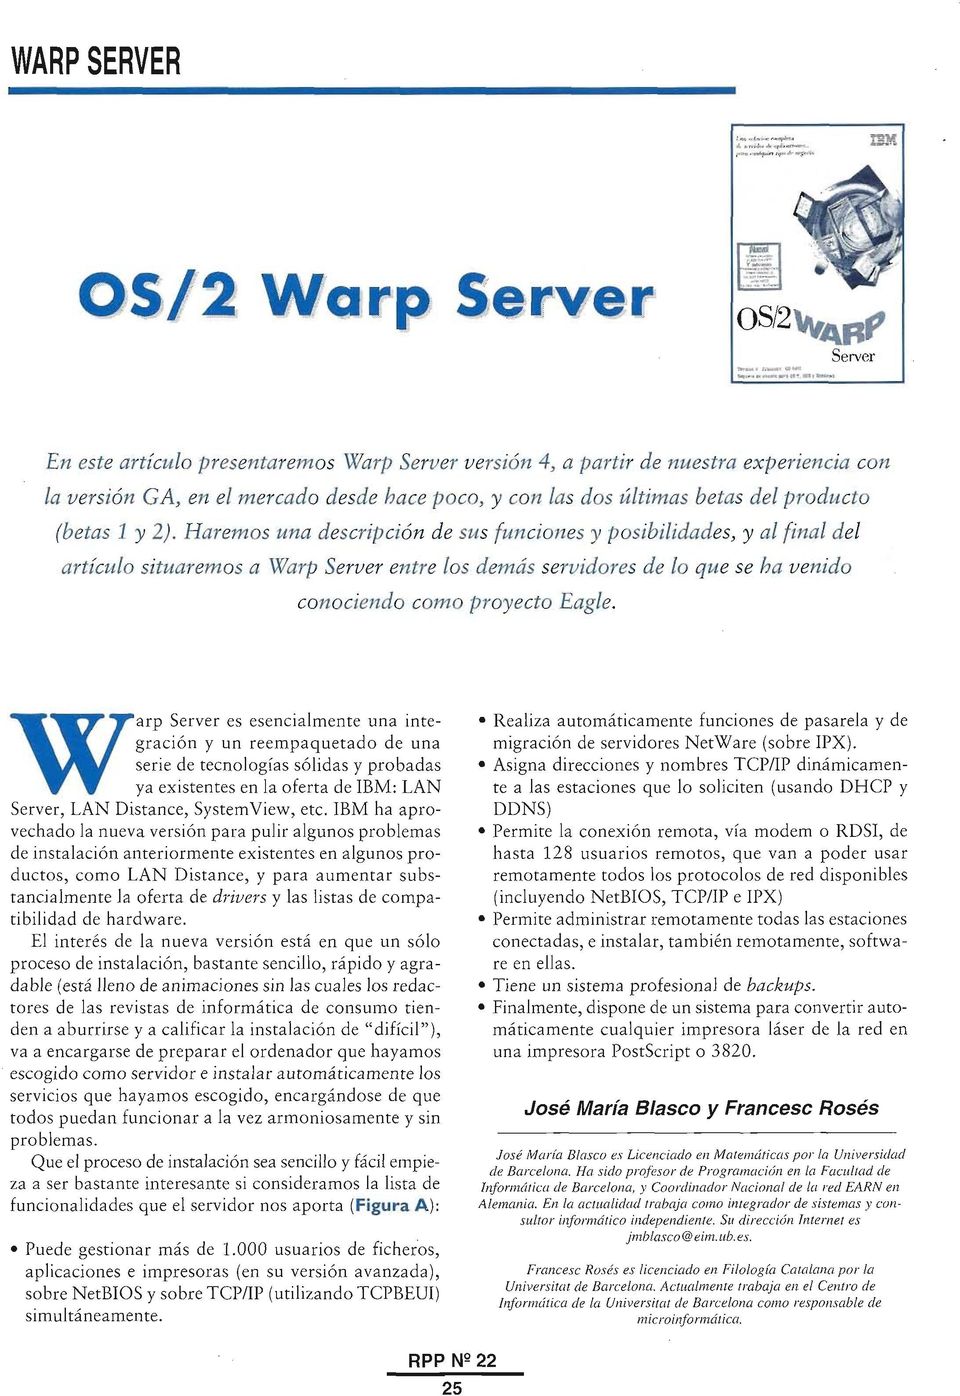 Haremos una descripción de sus funciones y posibilidades, y al final del artículo situaremos a Warp Server entre los demás servidores de lo que se ha venido conociendo como proyecto Eagle.